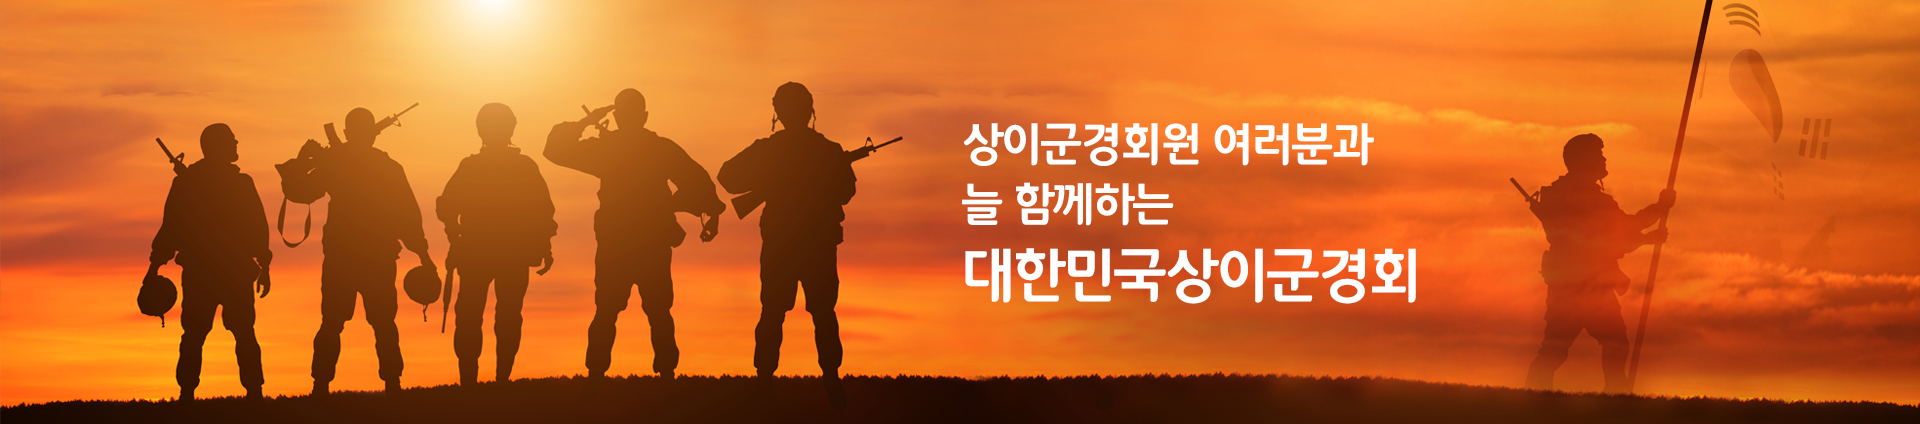 메인이미지:그림(태극기, 군인동상), (문구:상이군경회원 여러분과 늘 함께하는 대한민국상이군경회